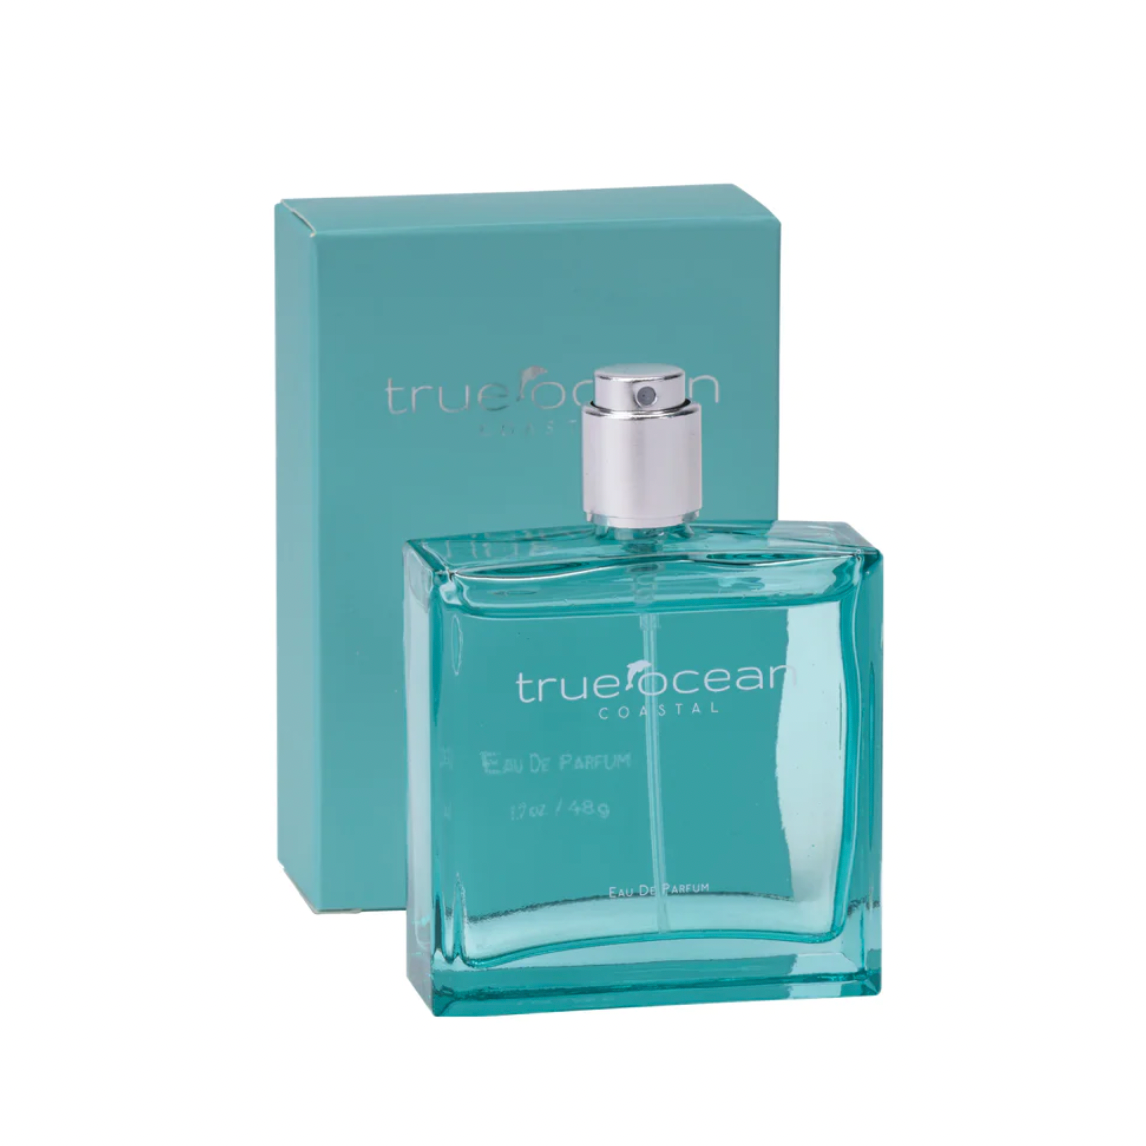 True Ocean: Coastal - a Beach Perfume